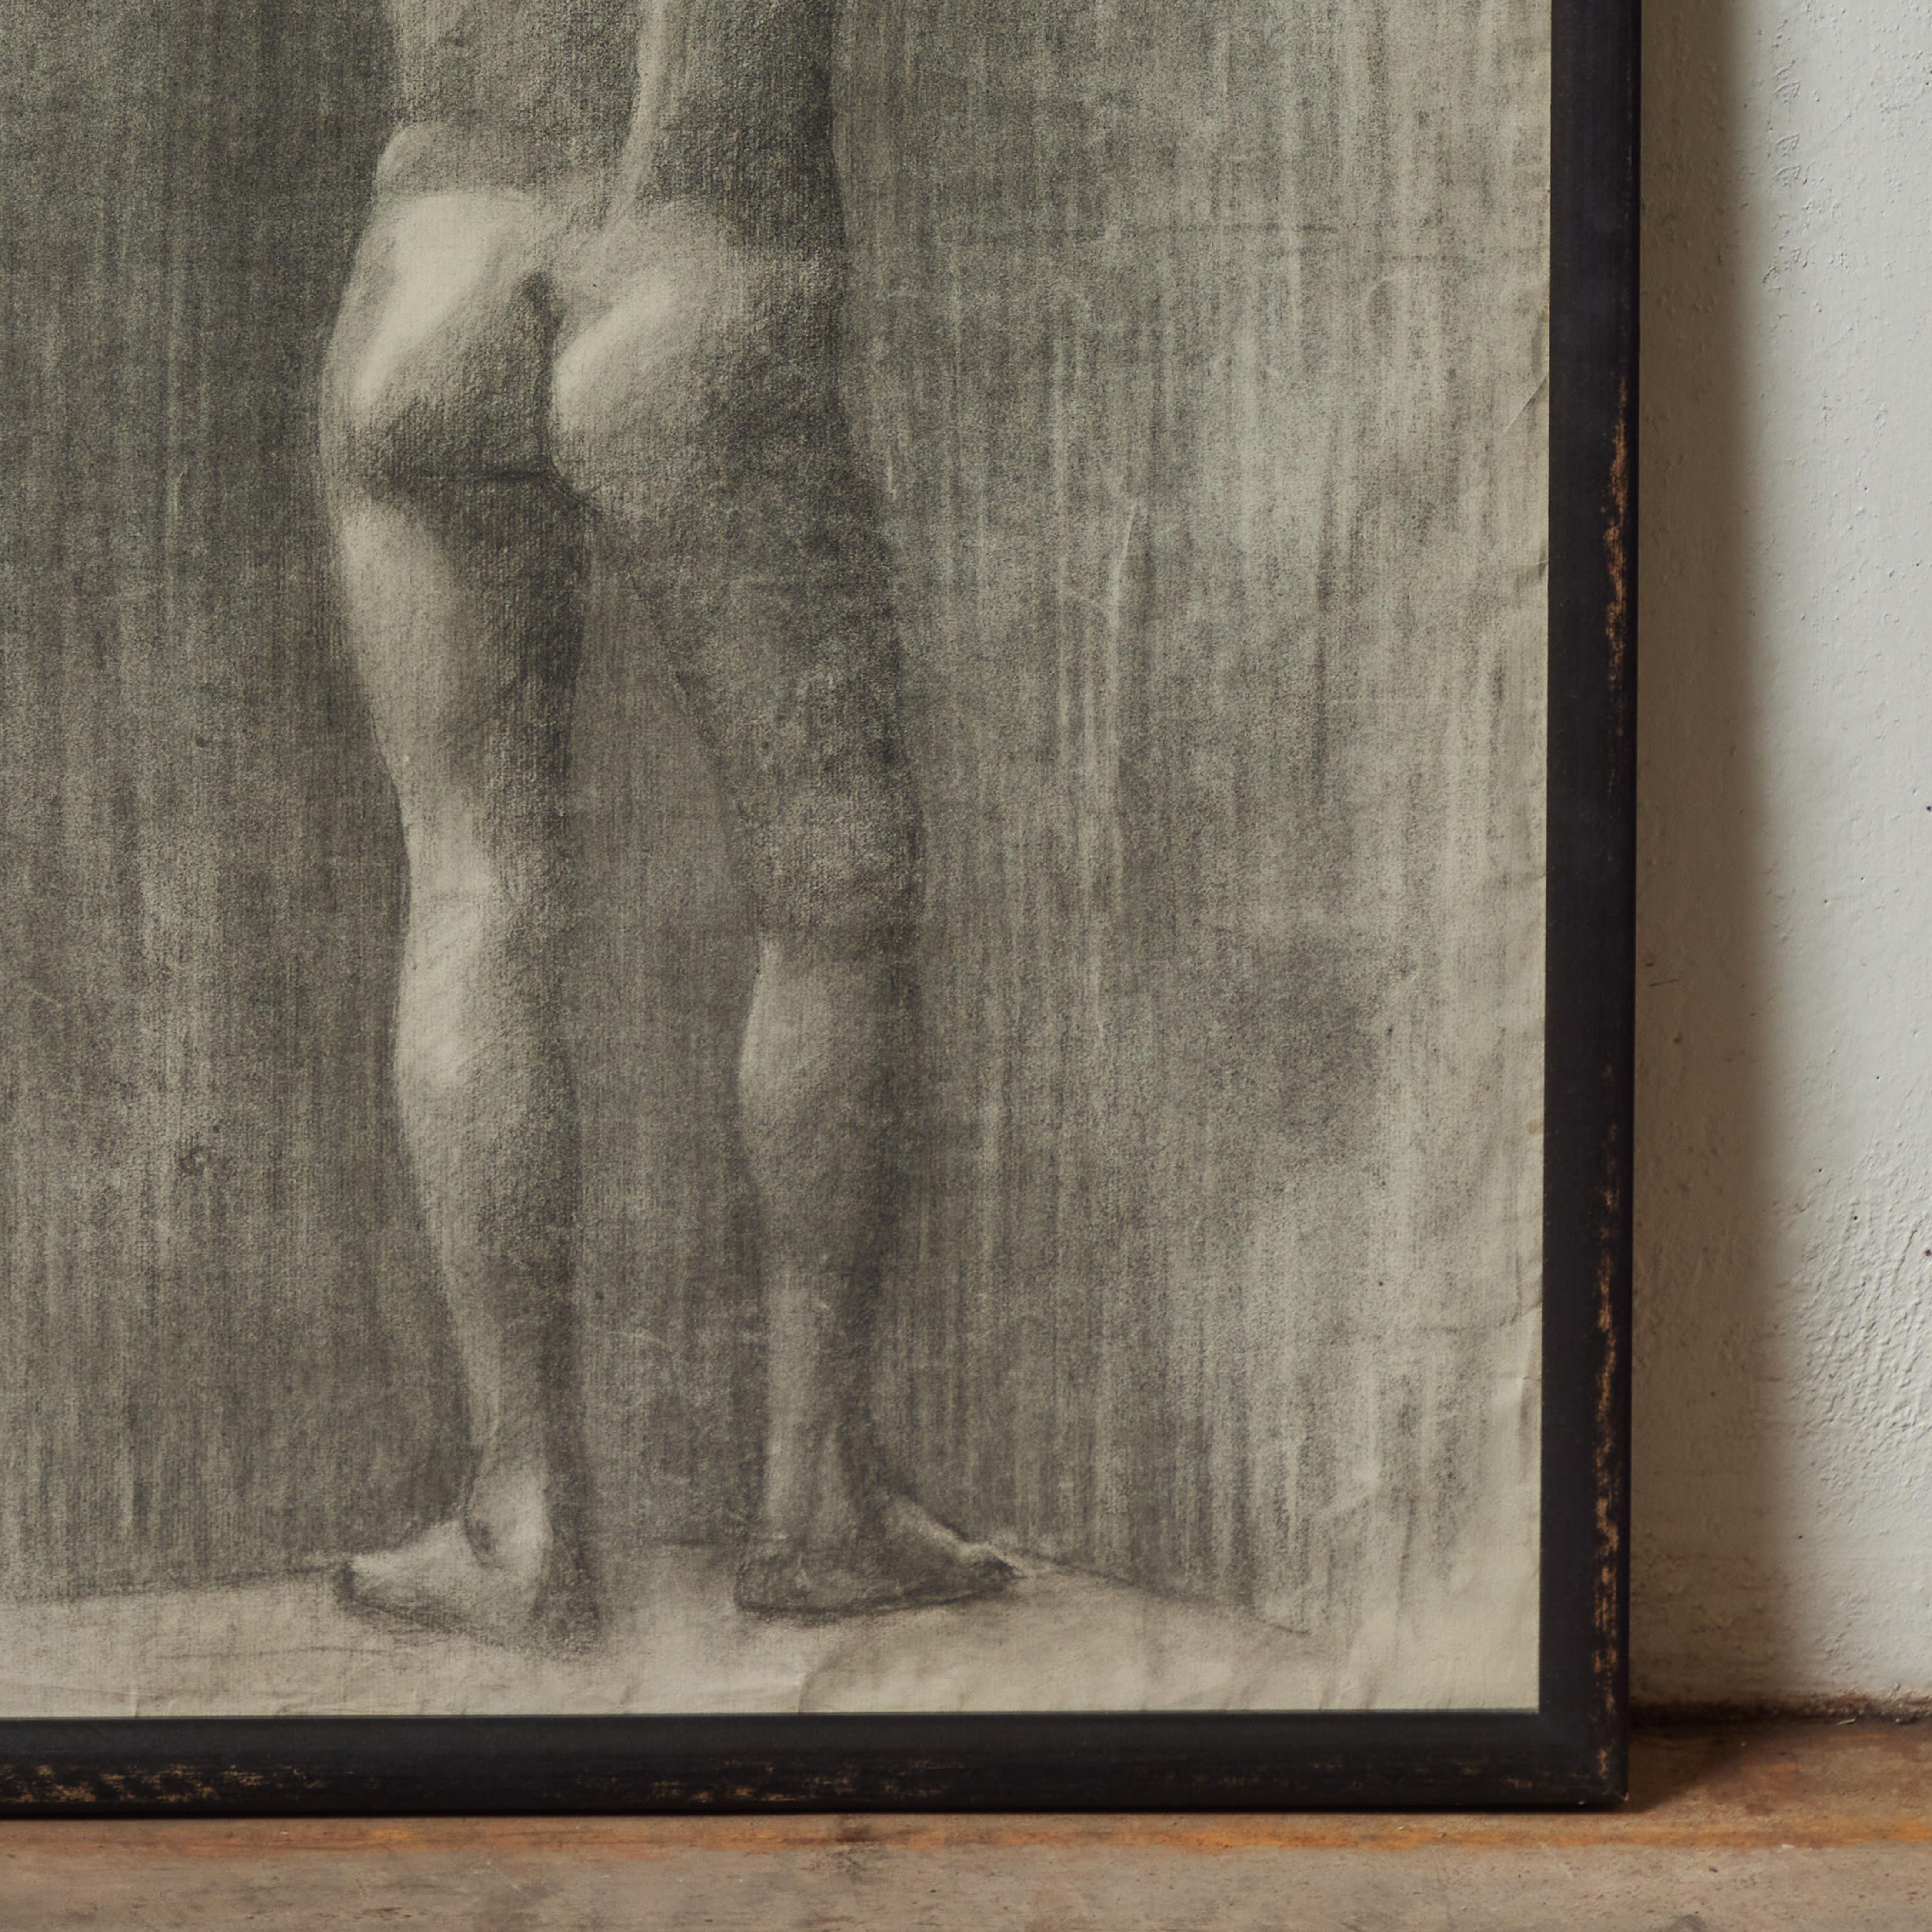 Französische akademische Kohlezeichnung der Jahrhundertwende mit einer stehenden nackten Figur, von hinten gesehen. Als ob sie die Haltung des Betrachters oder des Künstlers widerspiegeln würde, scheint die Figur in einer inneren Welt der